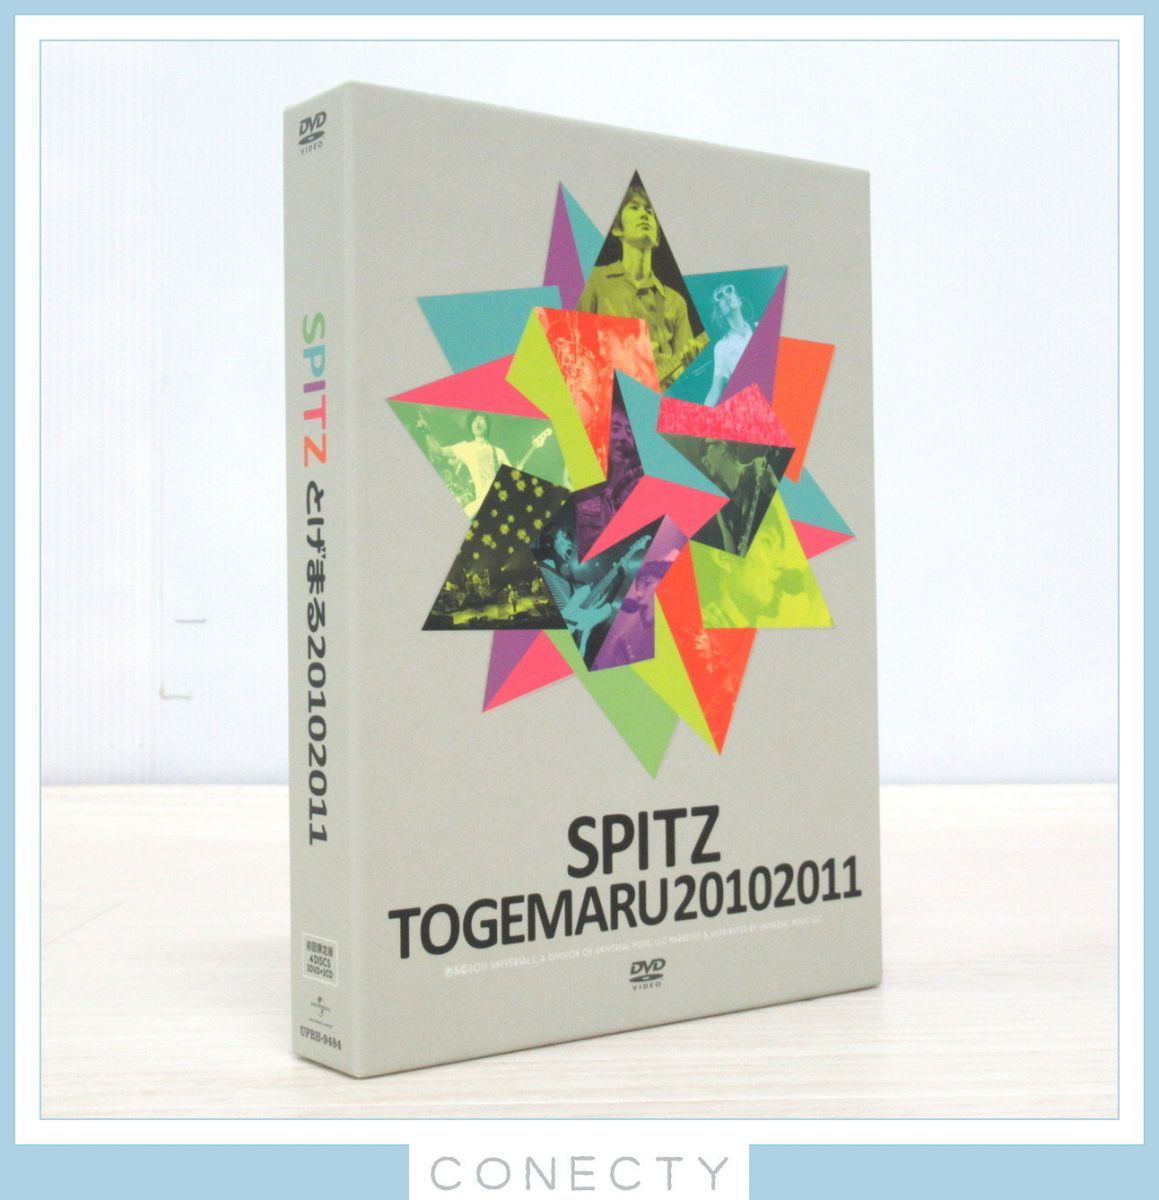 初回限定盤 スピッツ とげまる20102011 DVD SPITZ TOGEMARU 4枚組【J2